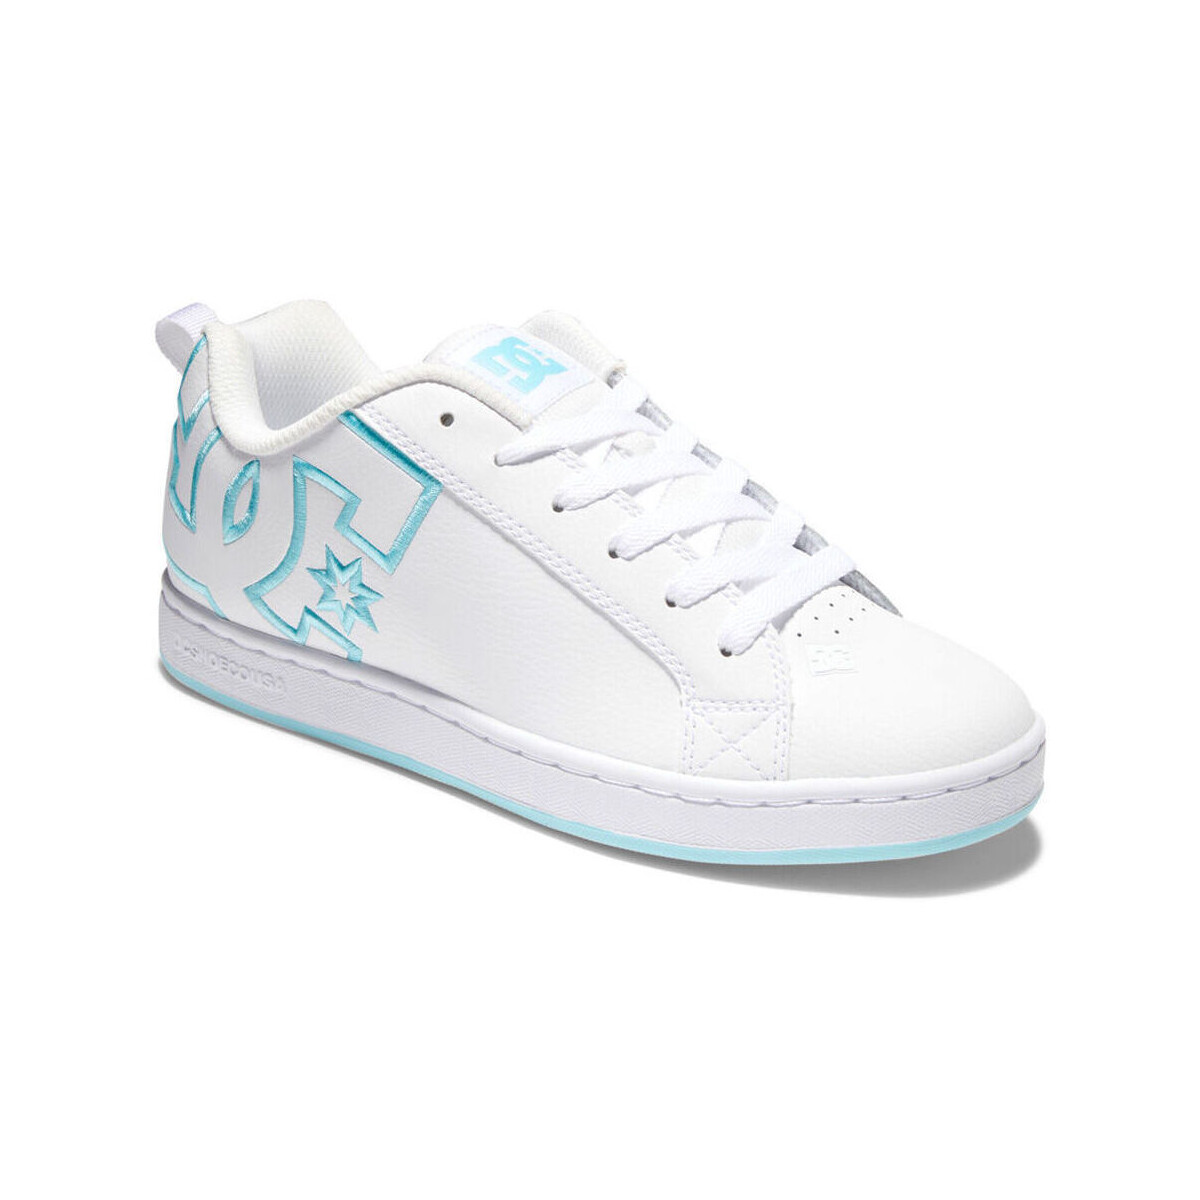 Παπούτσια Γυναίκα Sneakers DC Shoes Court graffik 300678 WHITE/WHITE/BLUE (XWWB) Άσπρο